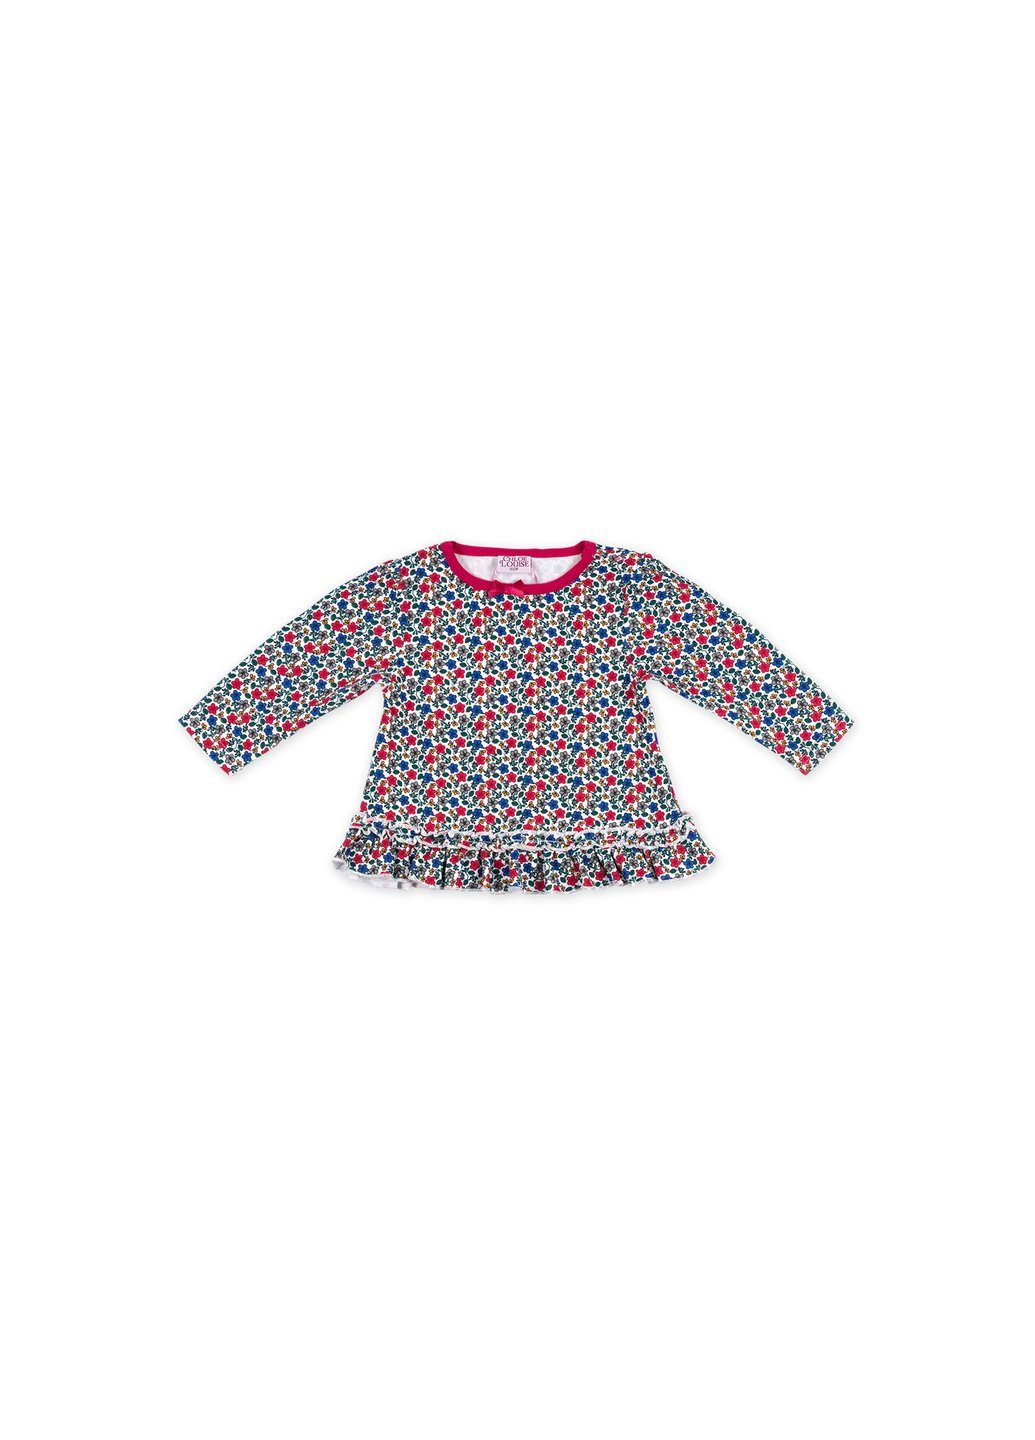 Комбинированный демисезонный набор детской одежды для девочек: кофточка, штанишки и меховая жилетка (g8070.12-18) Luvena Fortuna